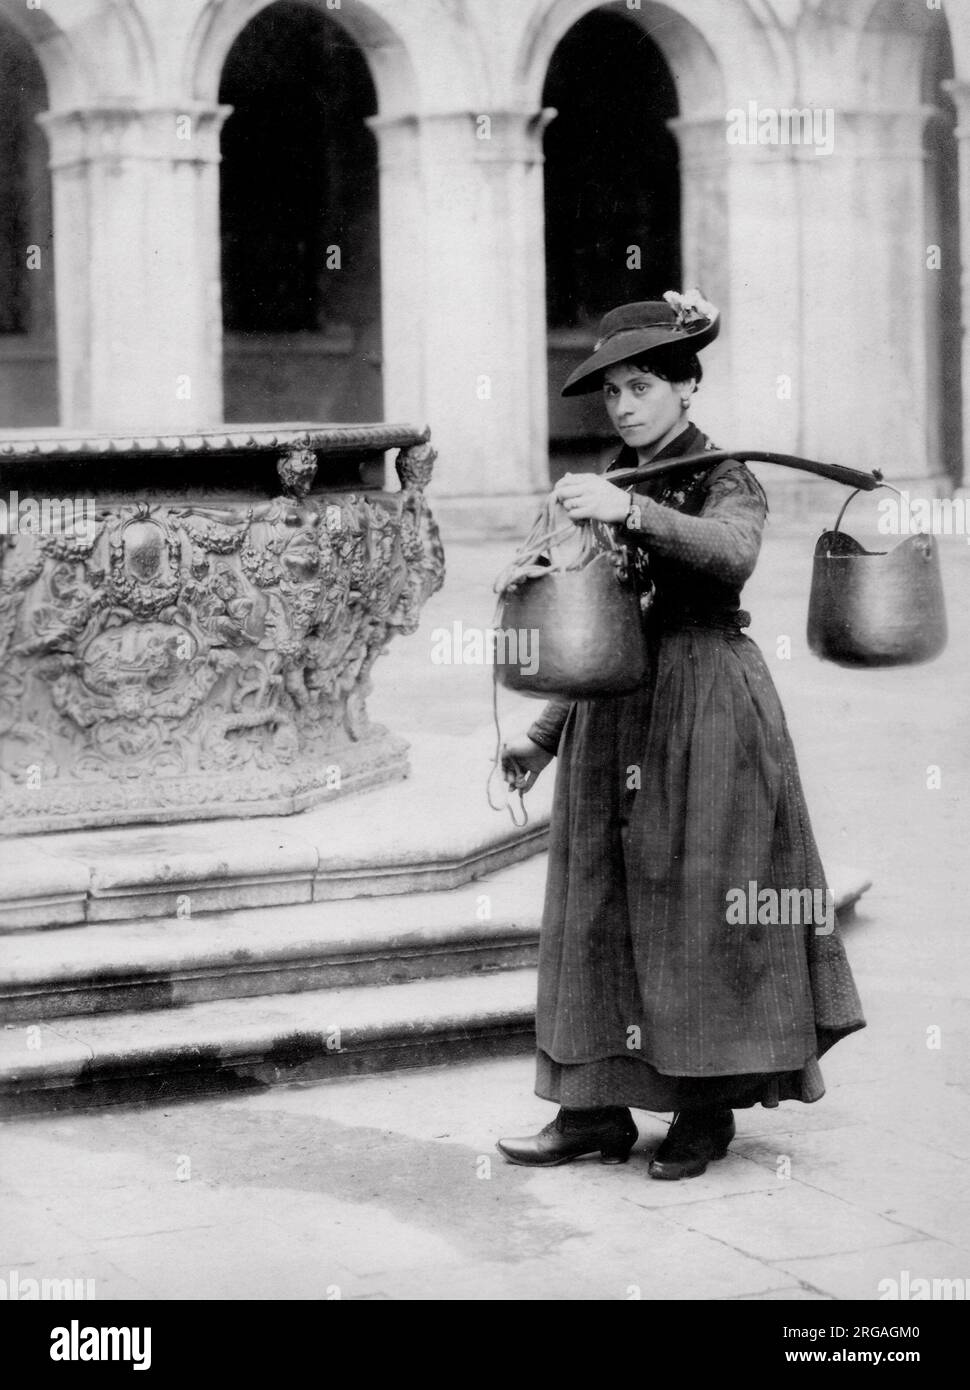 Fotografia d'annata del XIX secolo: Portatore d'acqua femminile a un pozzo, Venezia, Italia. Foto Stock